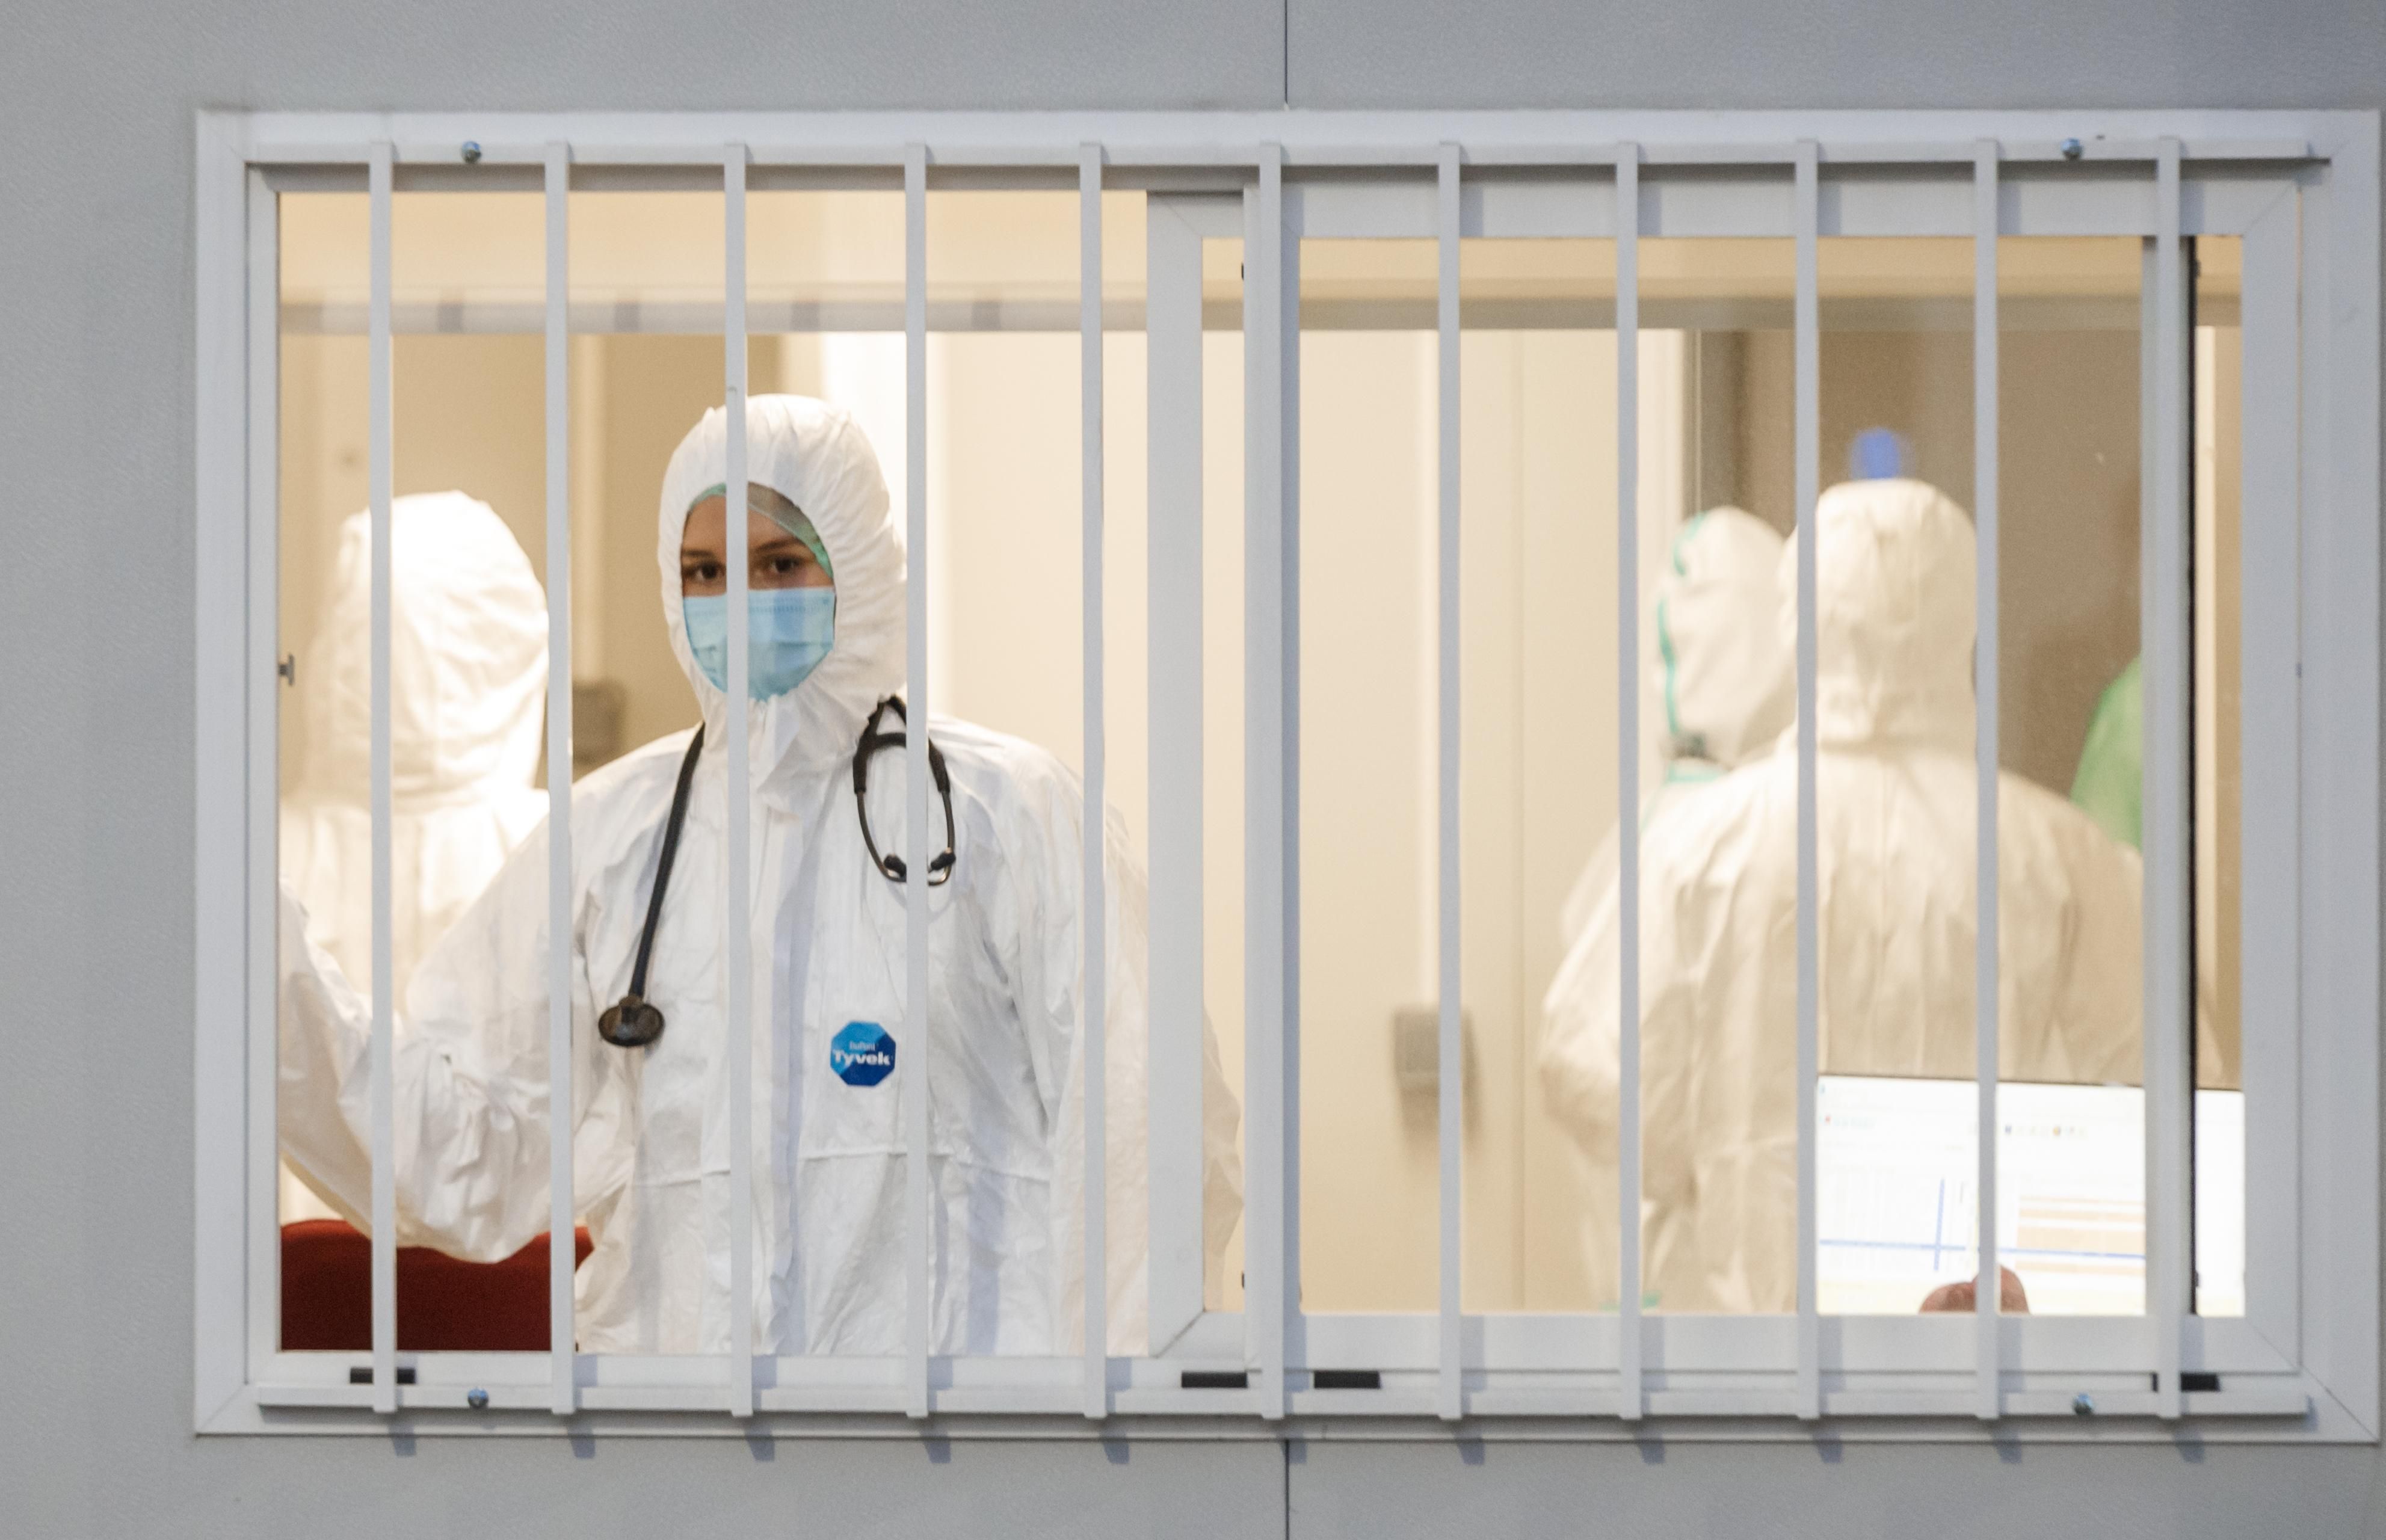 Скільки вільних місць і апаратів ШВЛ зараз є в лікарнях України: відповідь МОЗ